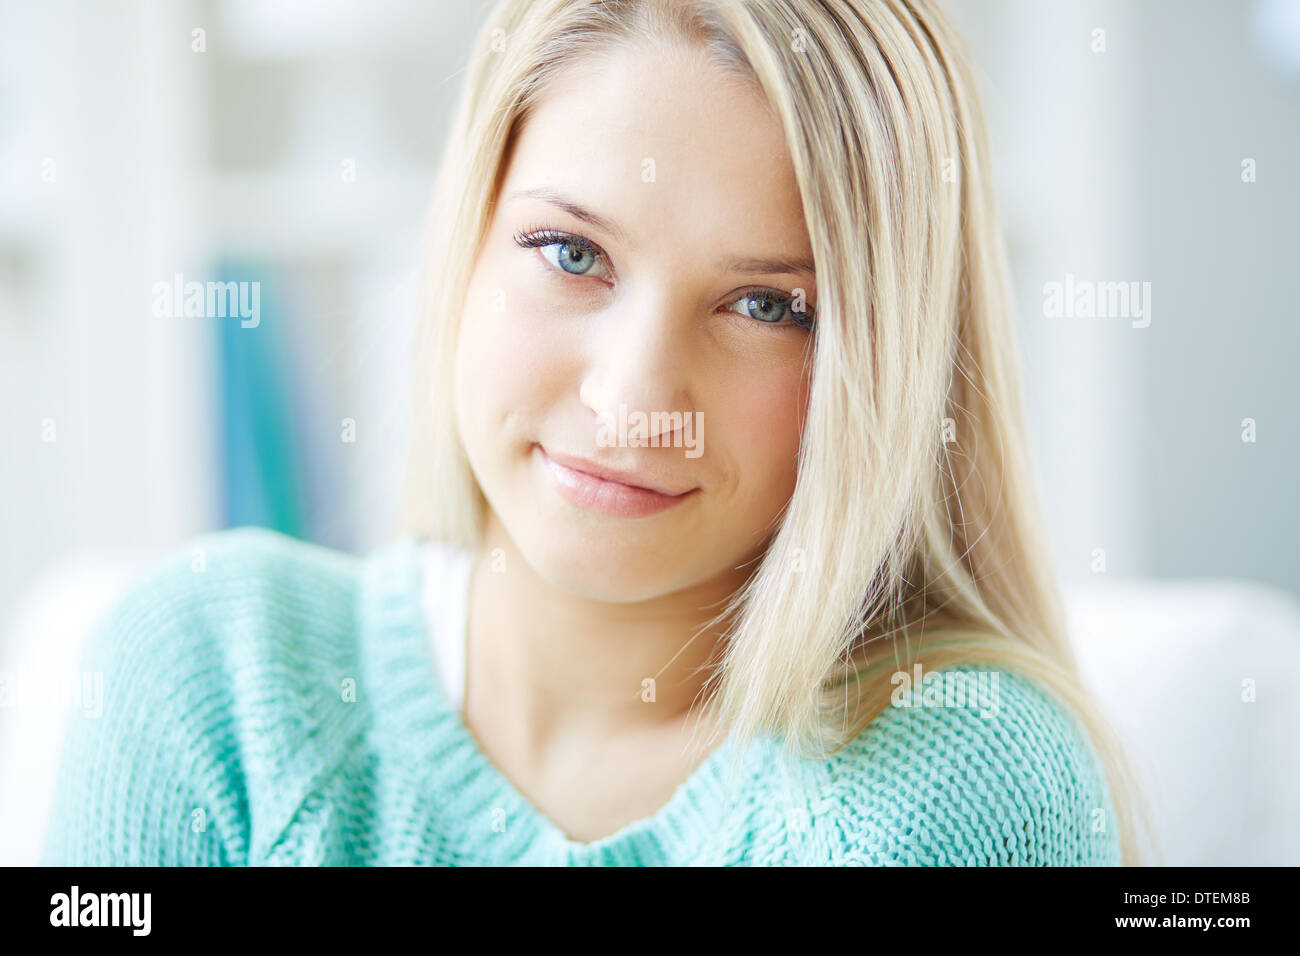 Porträt eines blonden Mädchens mit einem koketten look Stockfoto